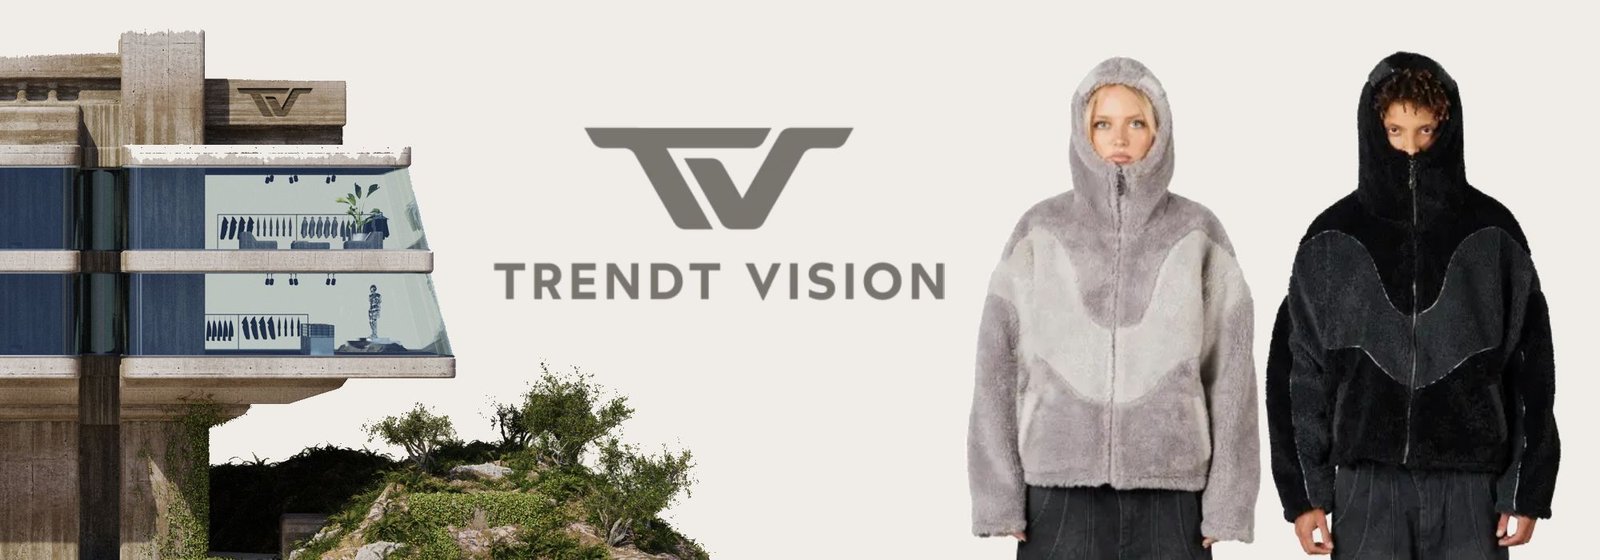 trendt vision banner